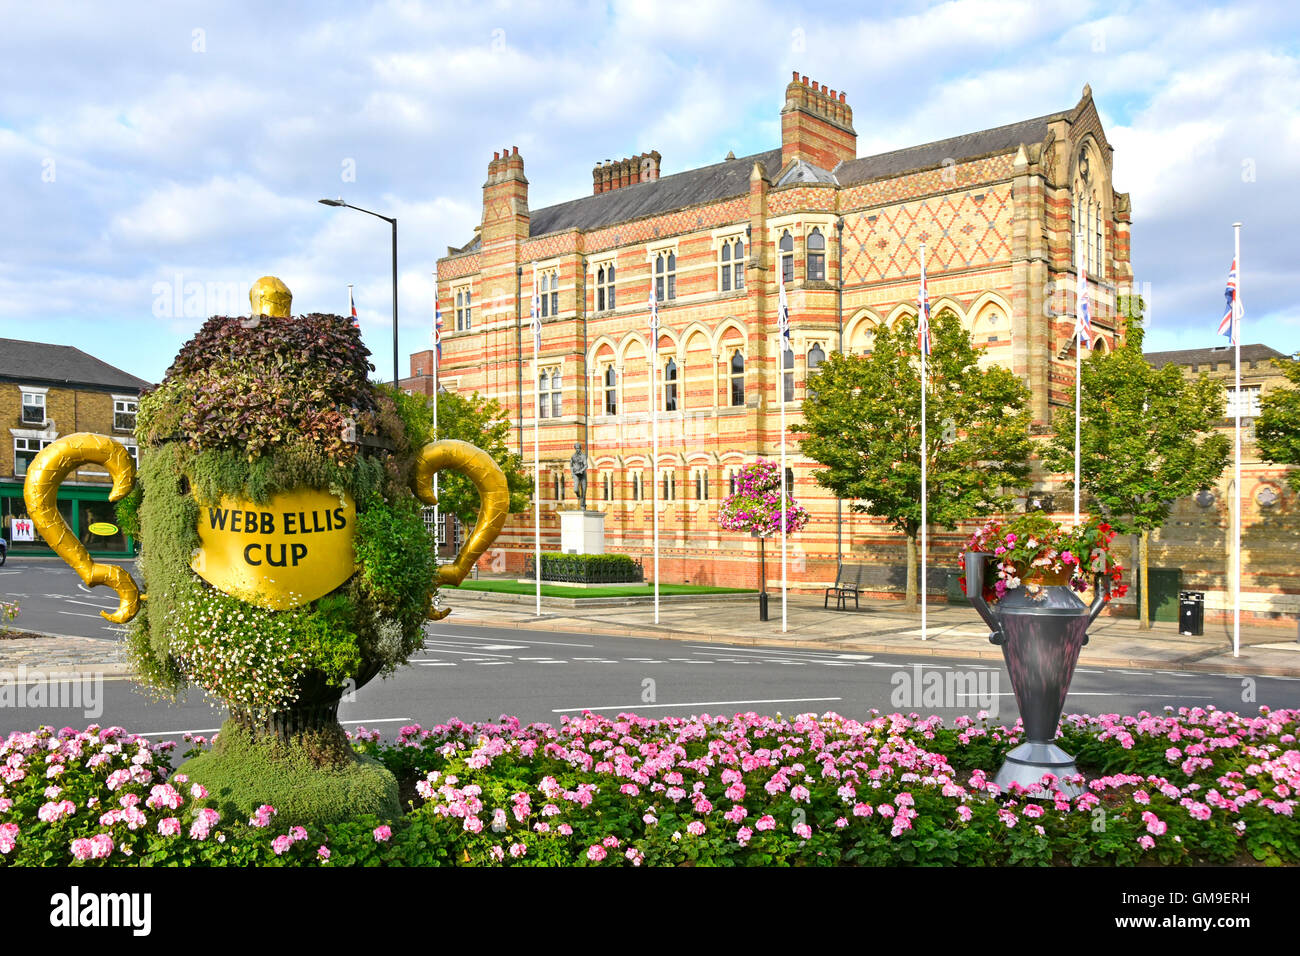 Poor replica of Webb Ellis Rugby Cup in flower display opposite statue of William Webb Ellis outside Rugby School buildings Warwickshire England UK Stock Photo